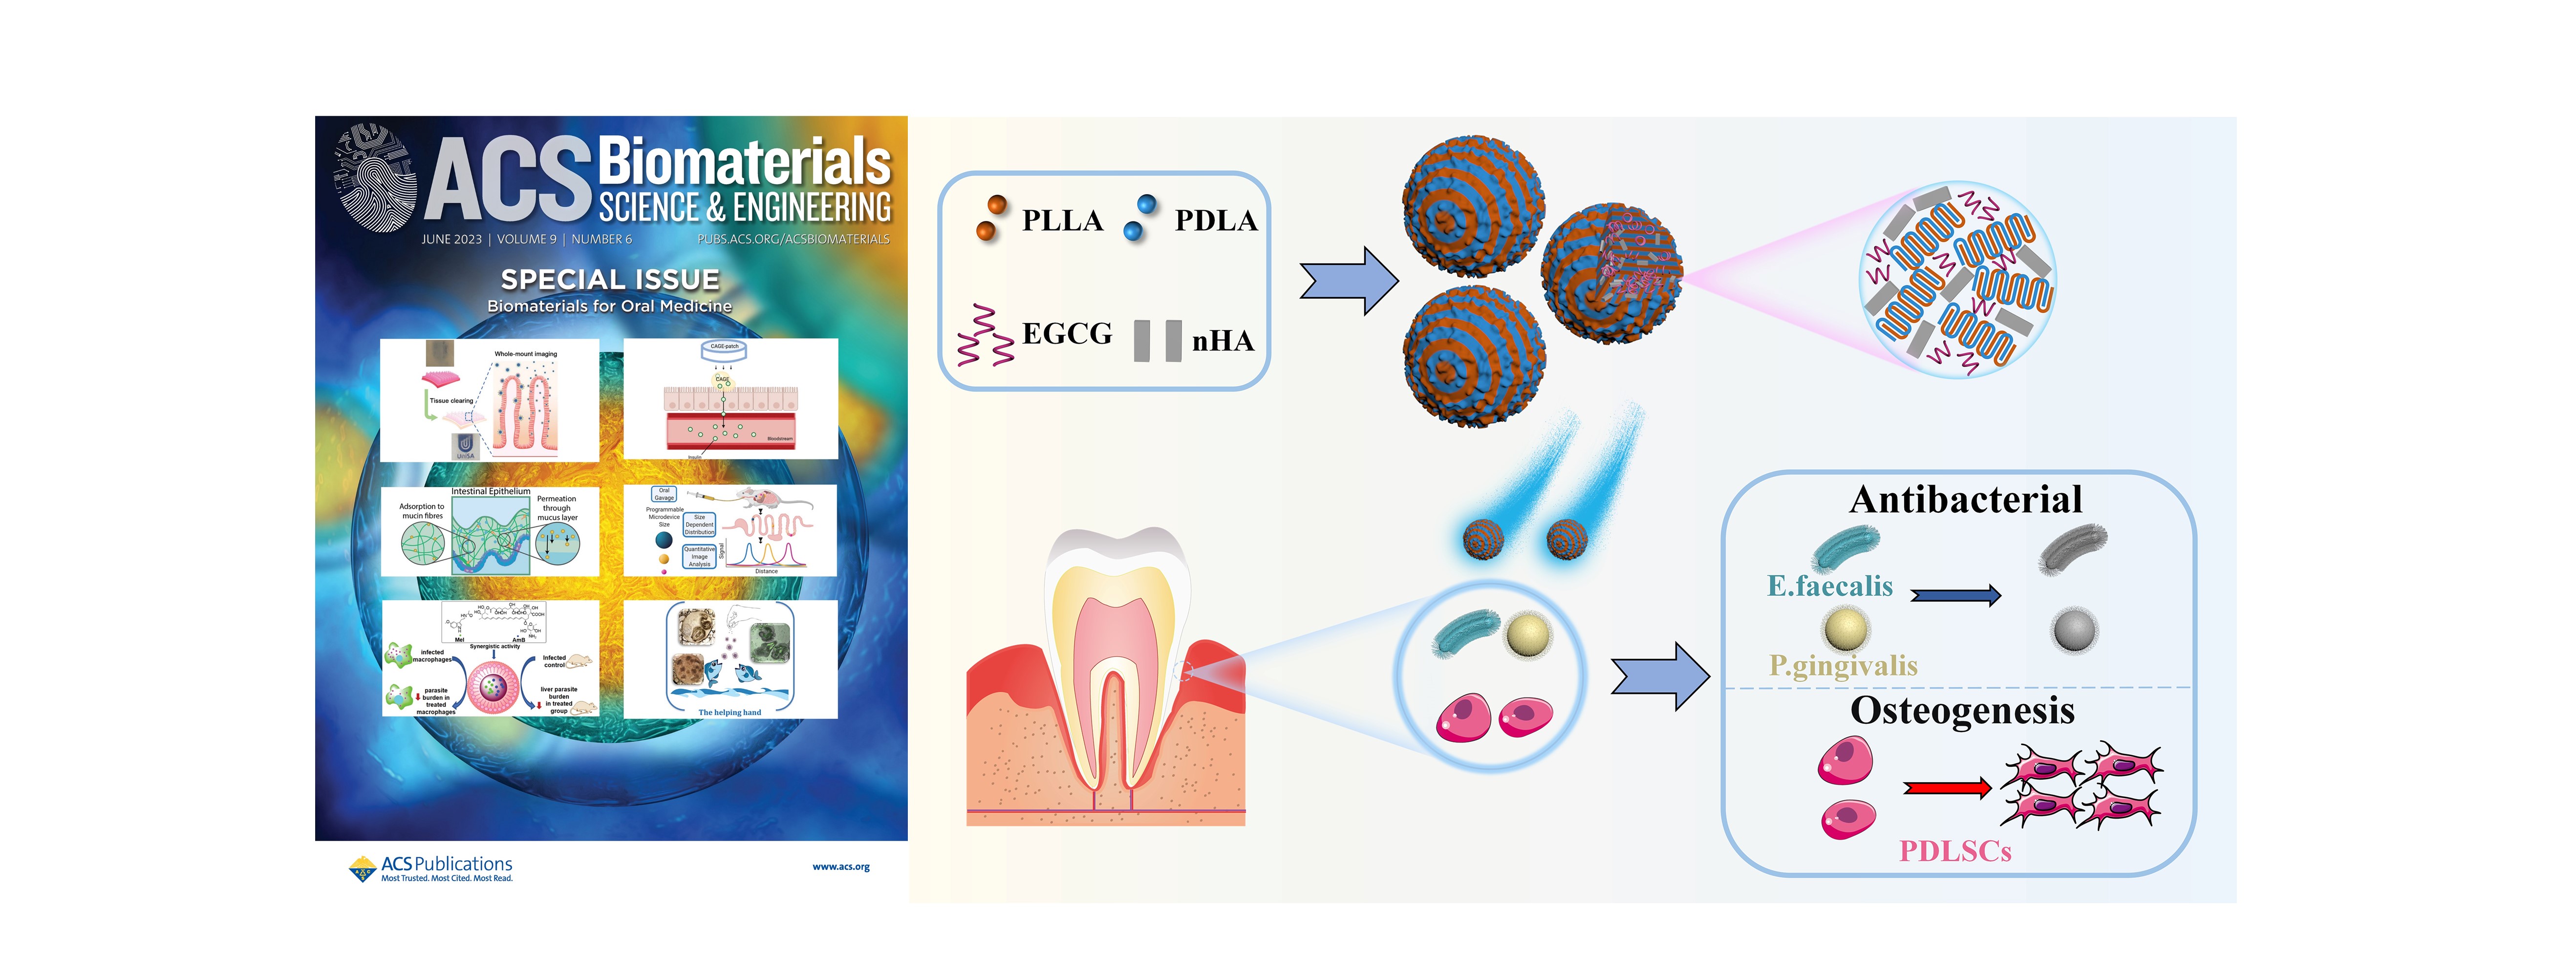 用于牙周炎修复的聚乳酸复合微球论文发表于ACS BSE期刊 